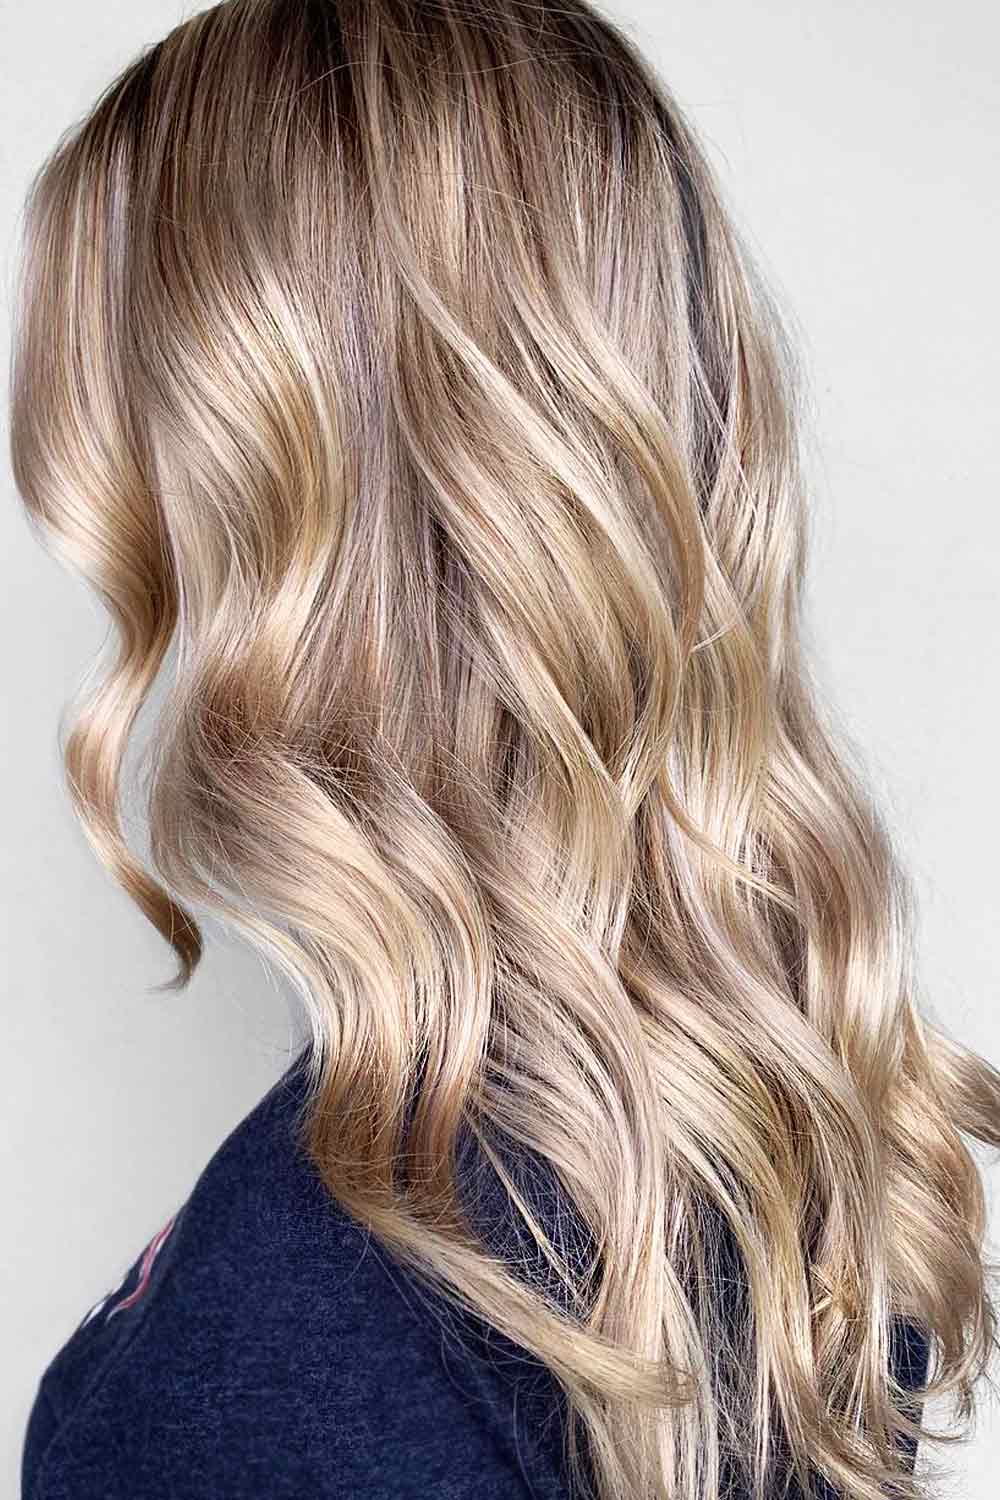 Natural-Looking Balayage Hair Ideas #blondebalayage #blondehair #balayagehair